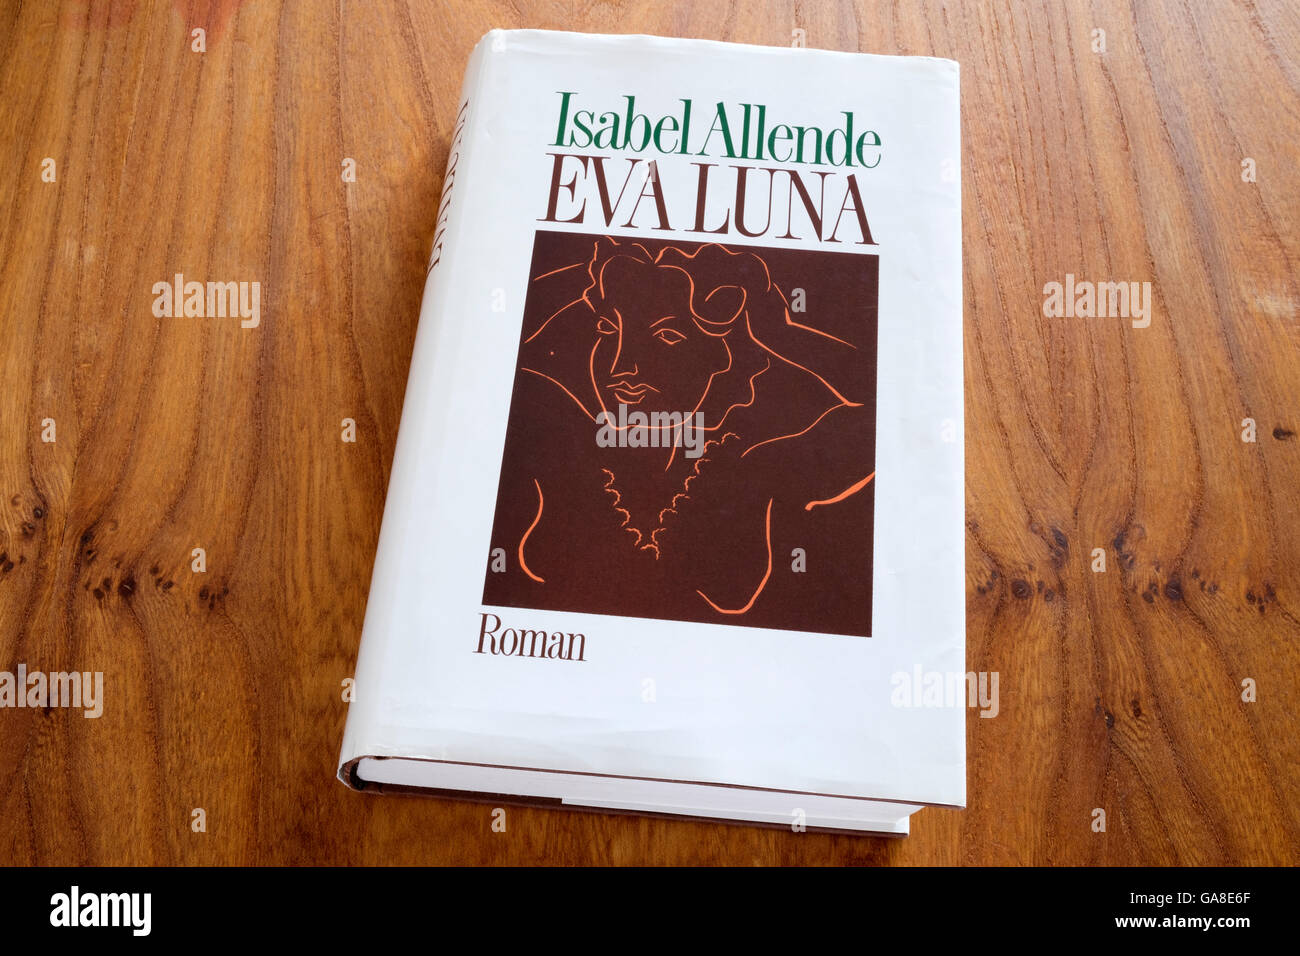 Isabel Allende Eva Luna hardback book Stock Photo